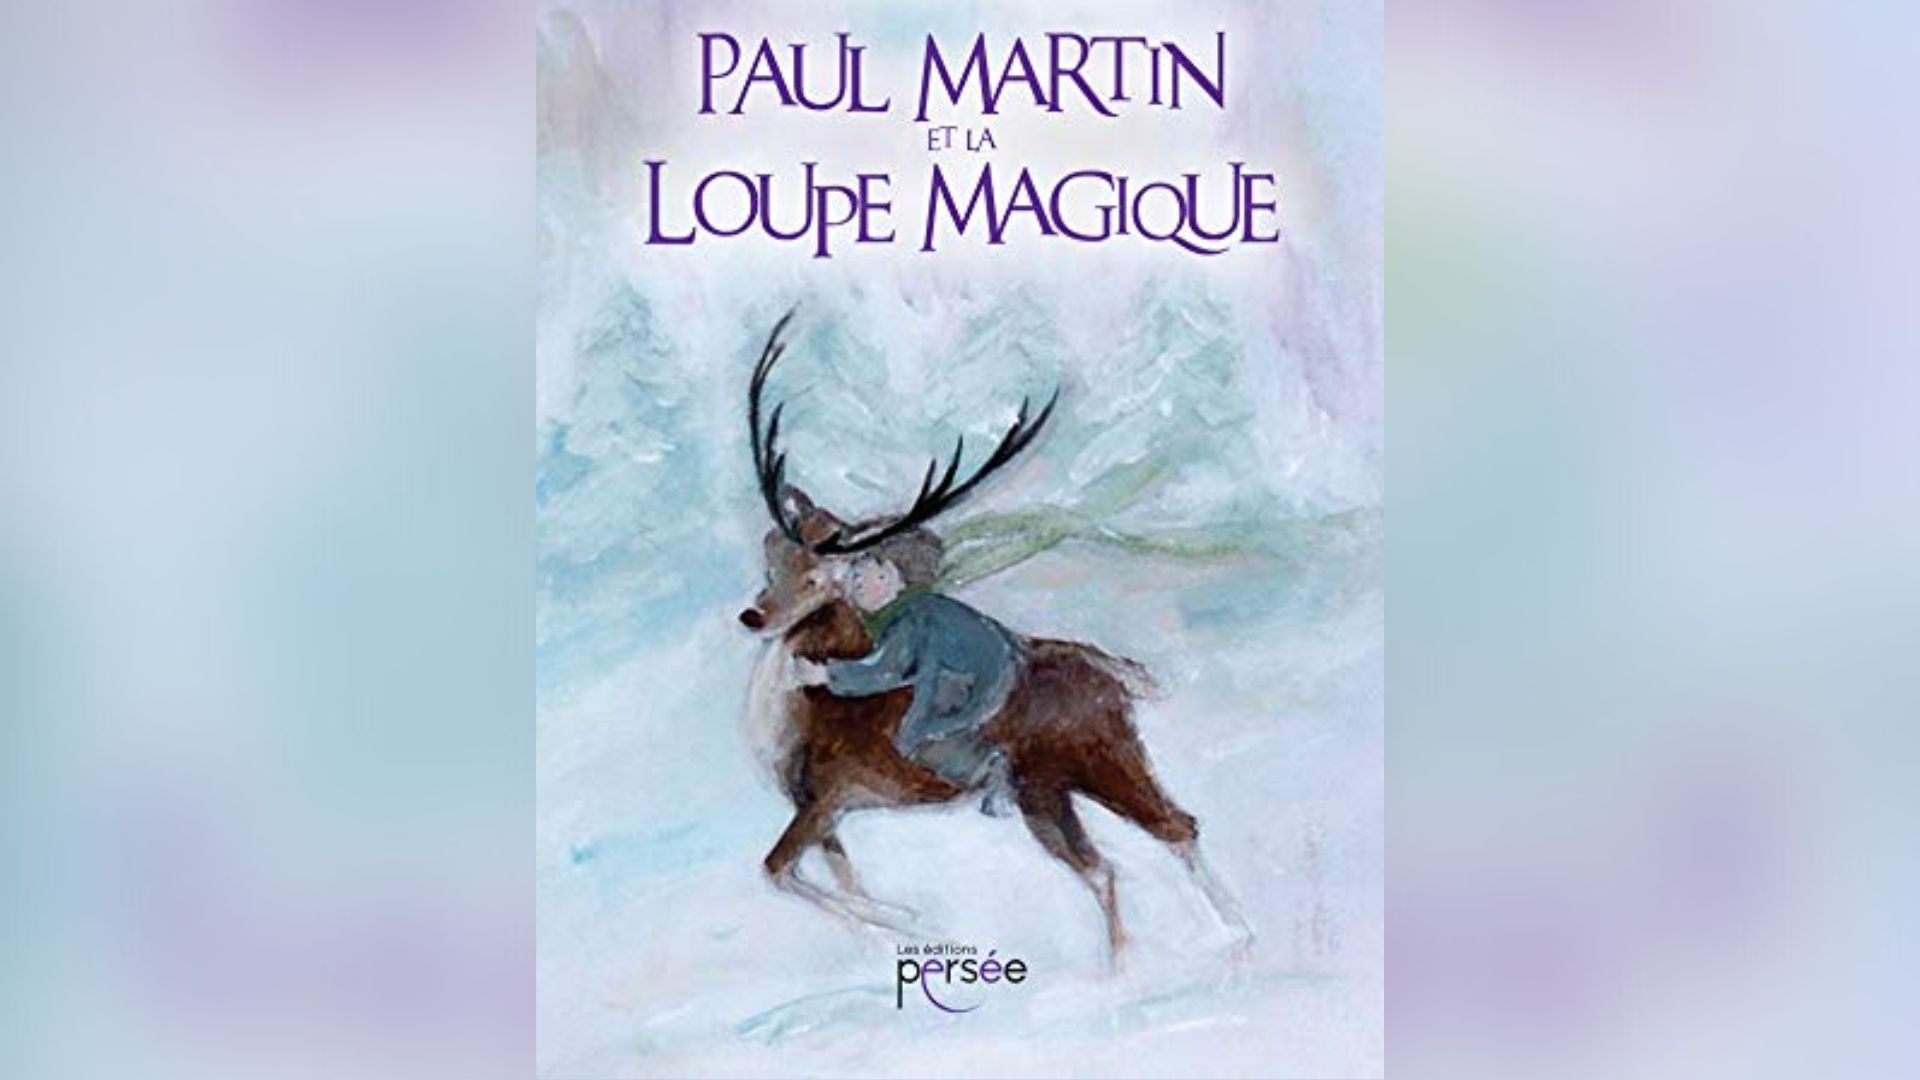 Couverture du livre "Paul Martin et la loupe magique"